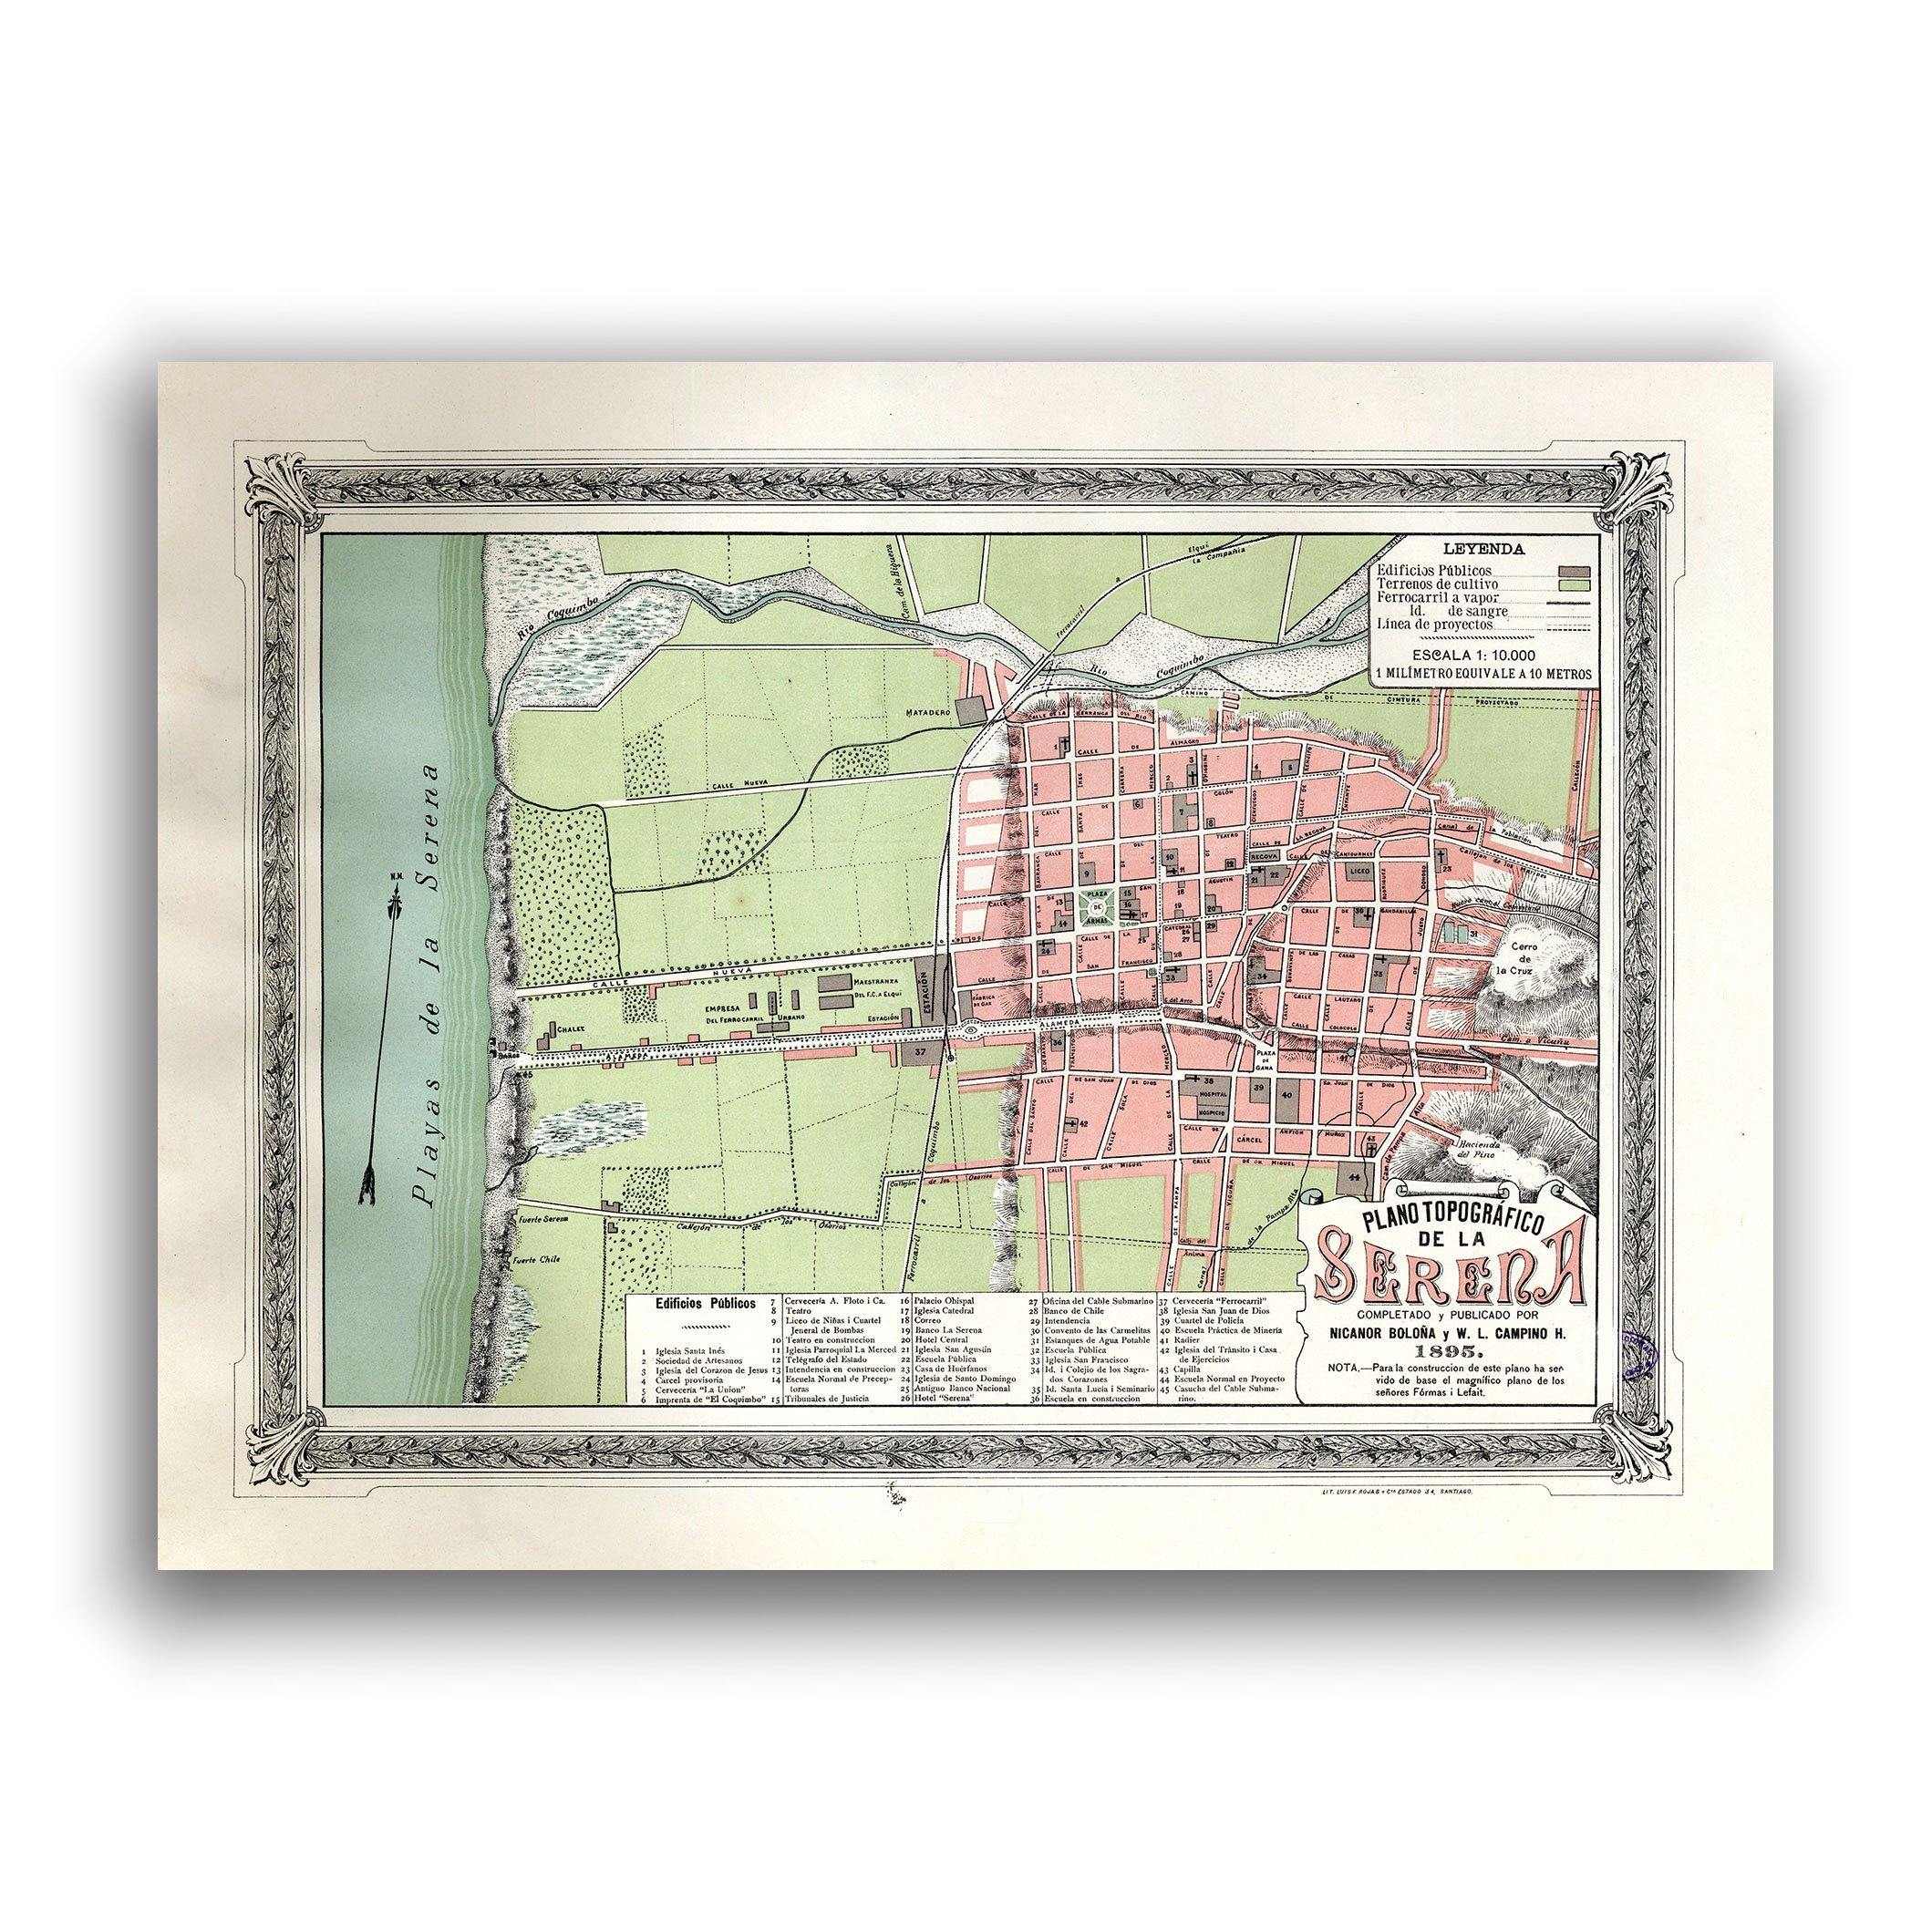 Plano de La Serena en 1895 - Lámina - Mappin